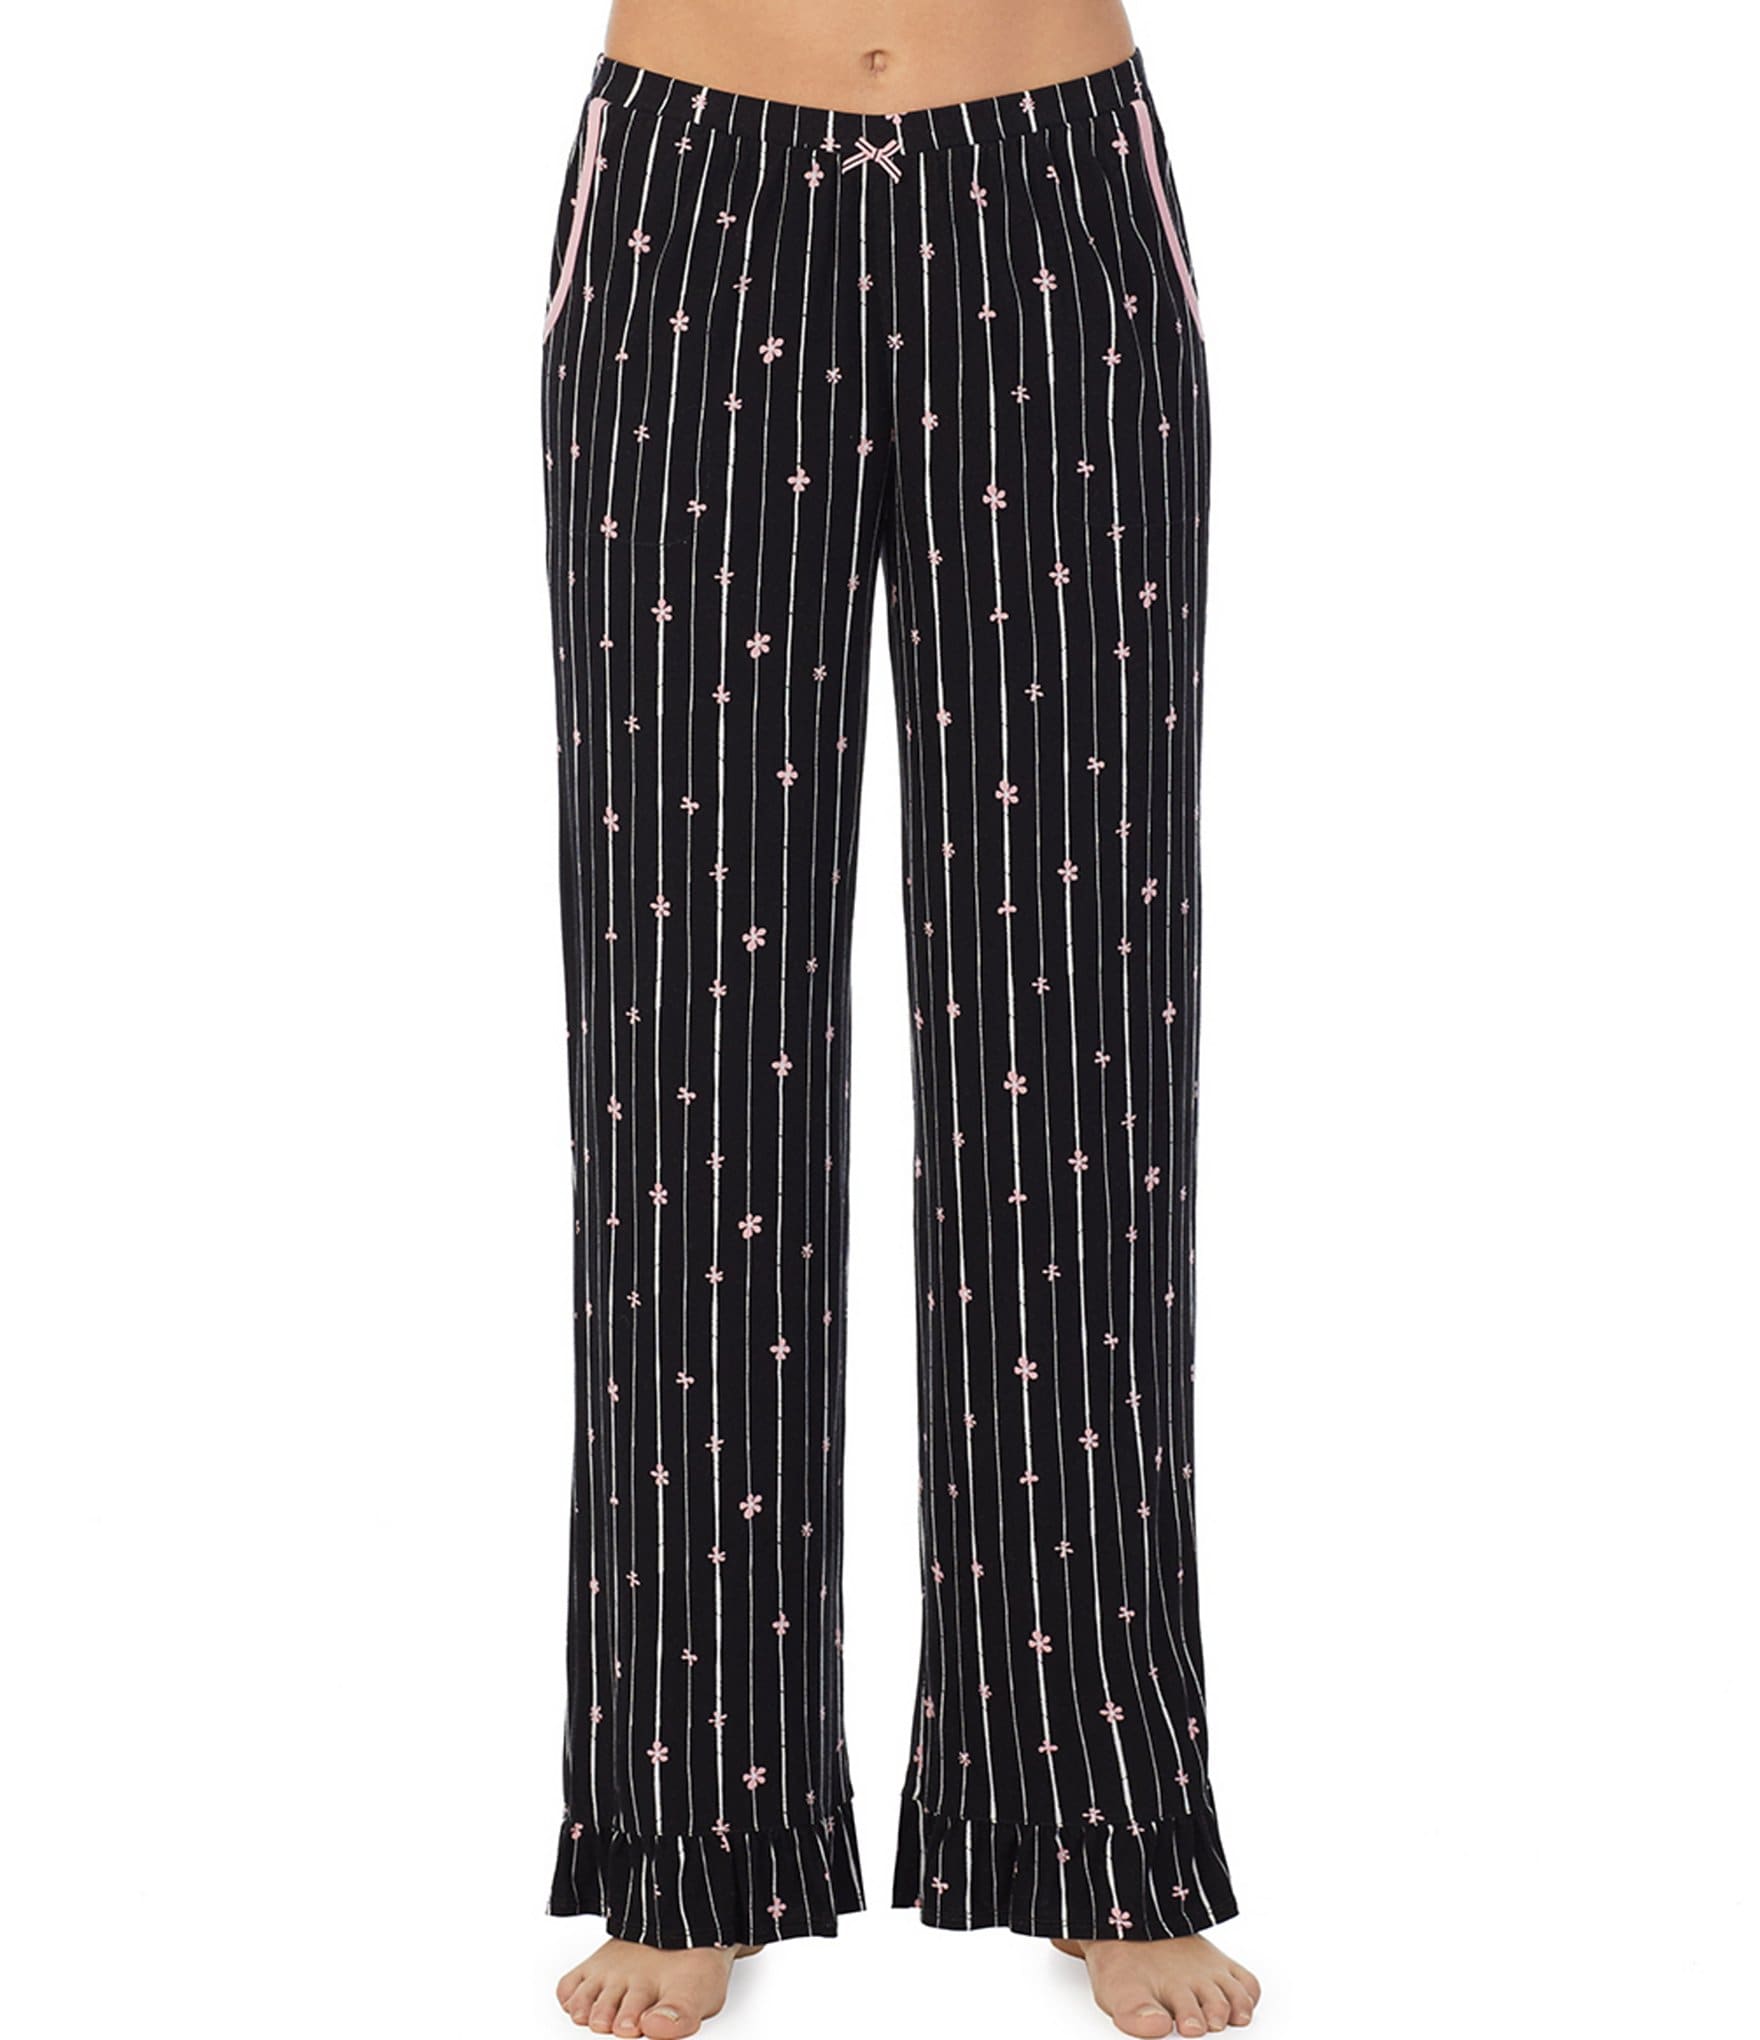 Kensie Knit Floral Striped Print Coordinating Full Length Sleep Pants ...